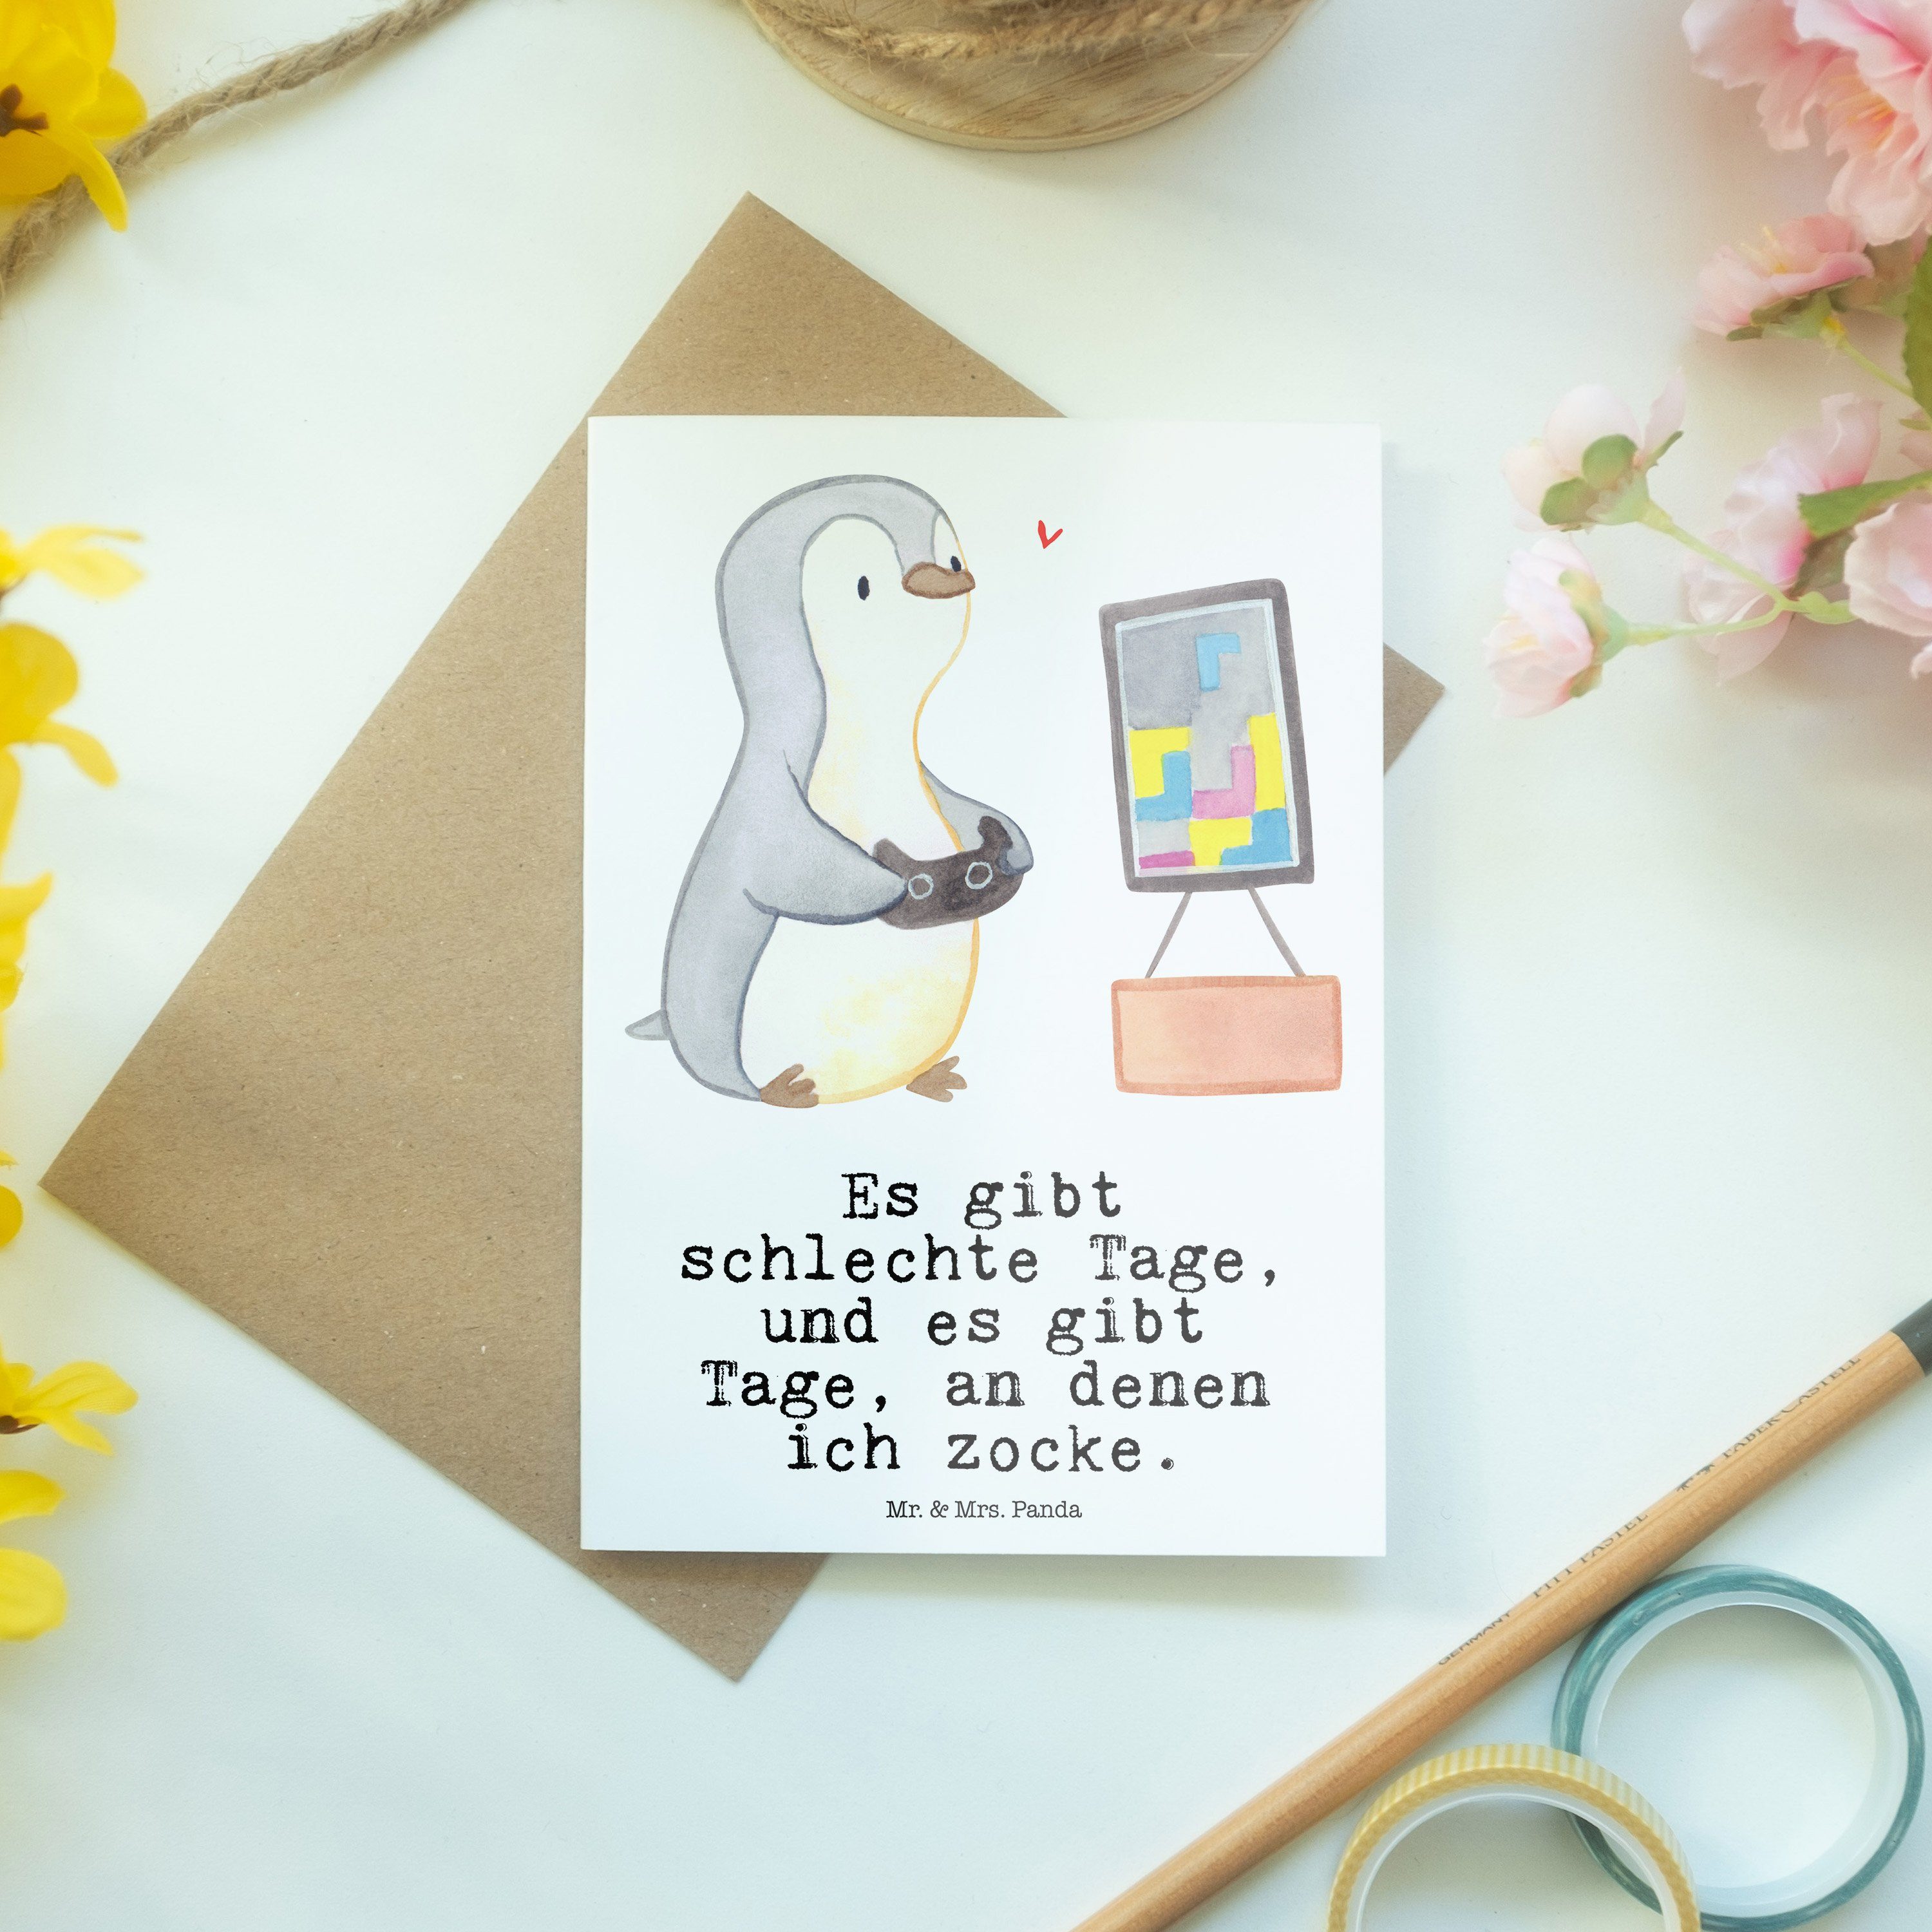 Mr. & Mrs. Panda Weiß - Glückwunschkarte, - Tage Pinguin Grußkarte Geschenk, Videogames Zocken